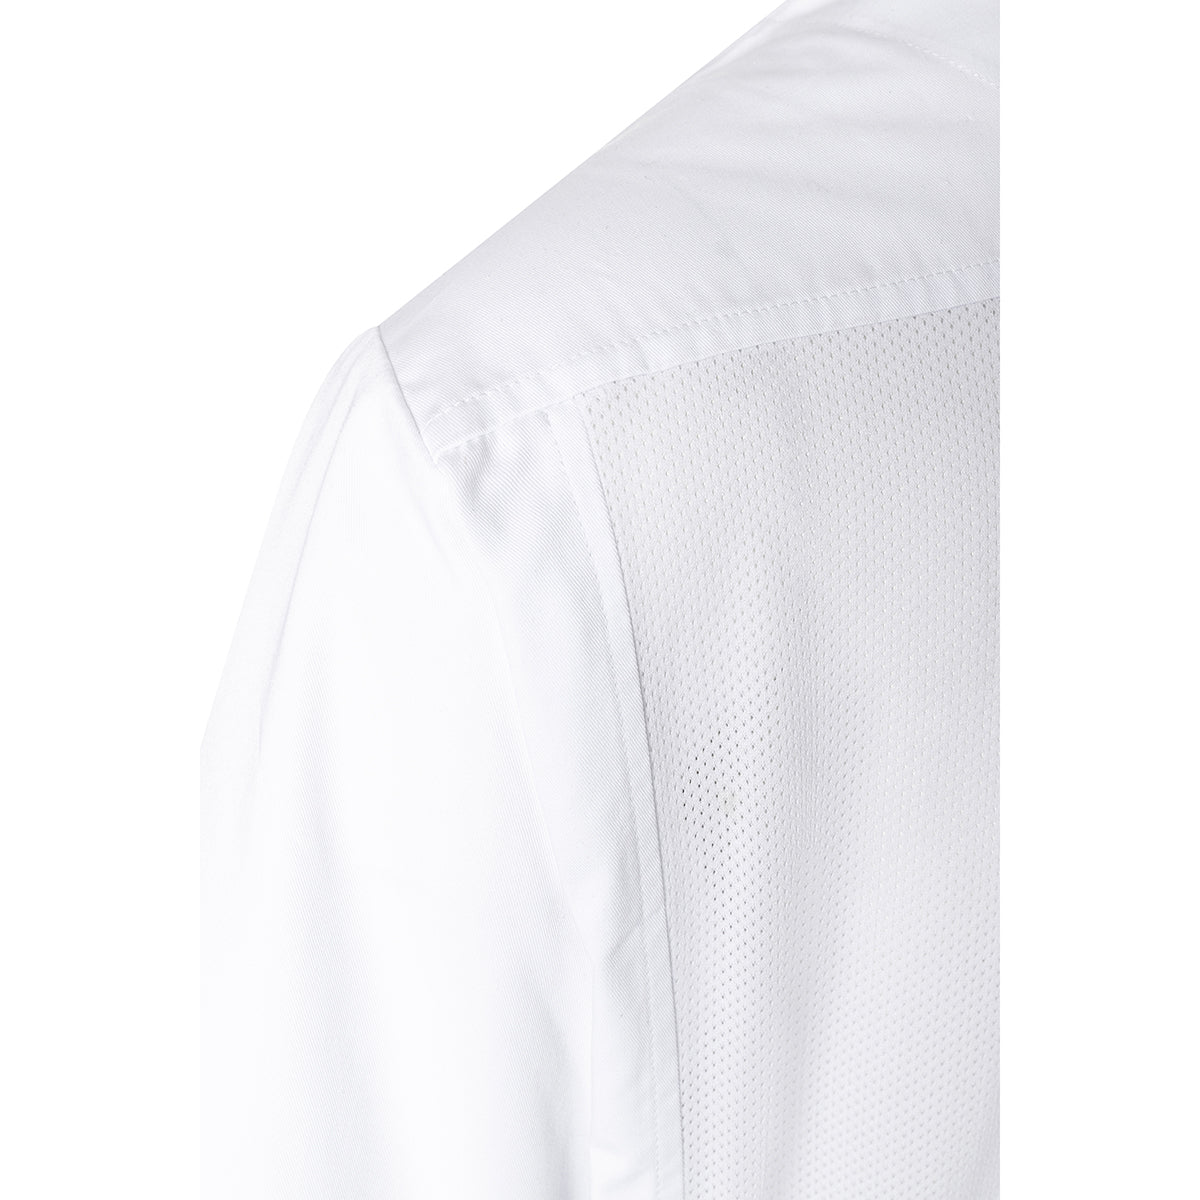 (6 stk) Karlowsky langermet skjorte - hvit - str. S